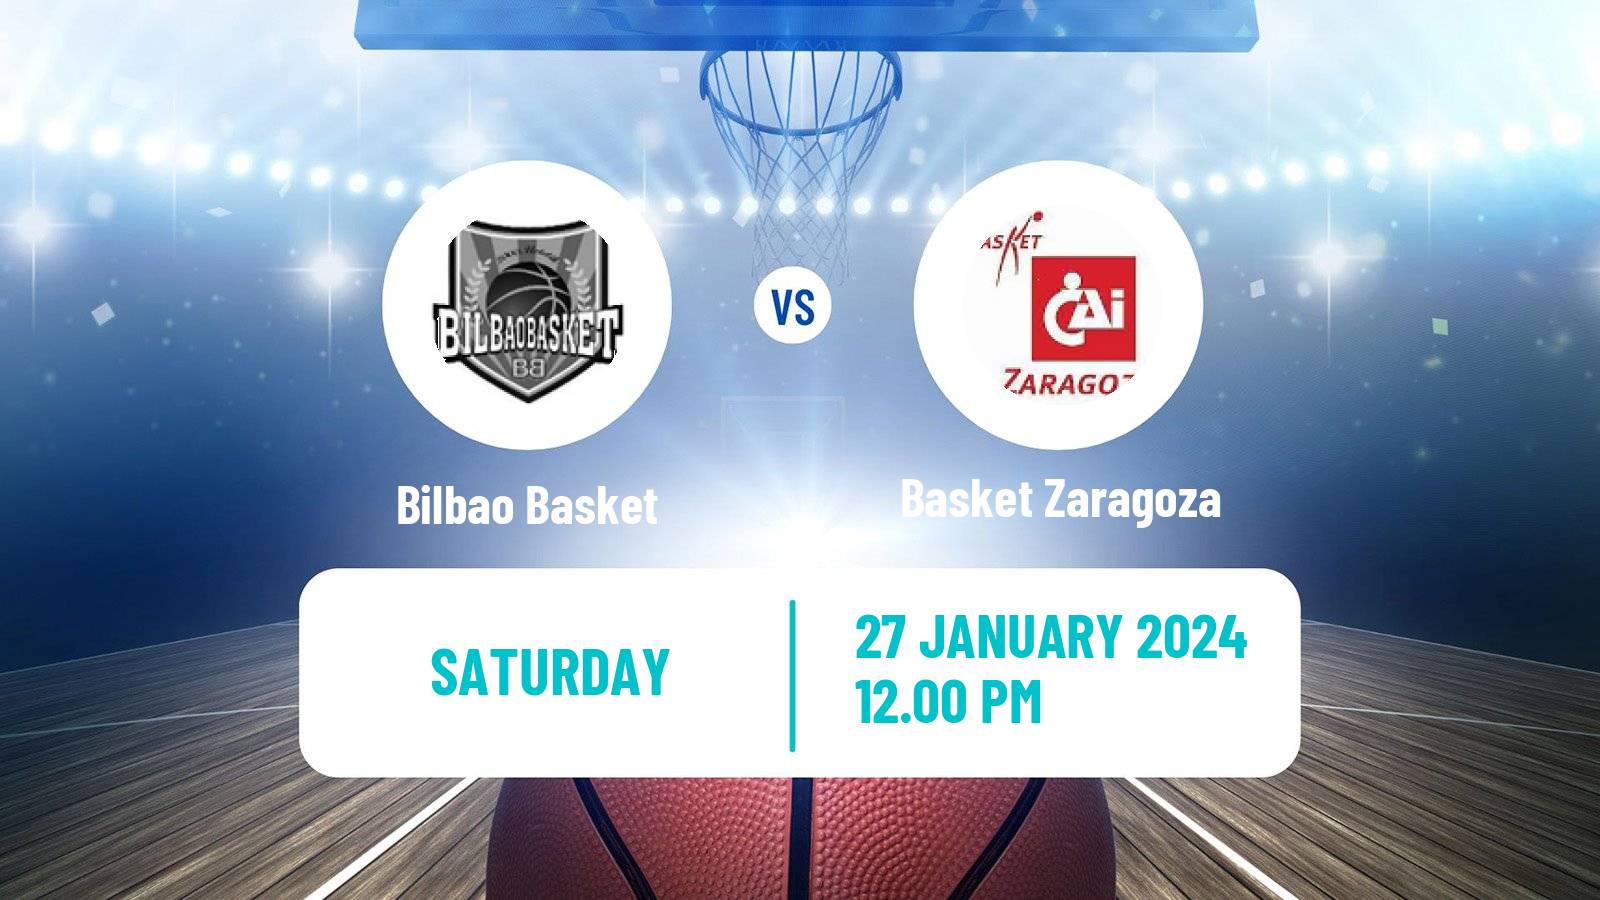 Basketball Spanish ACB League Bilbao Basket - Basket Zaragoza